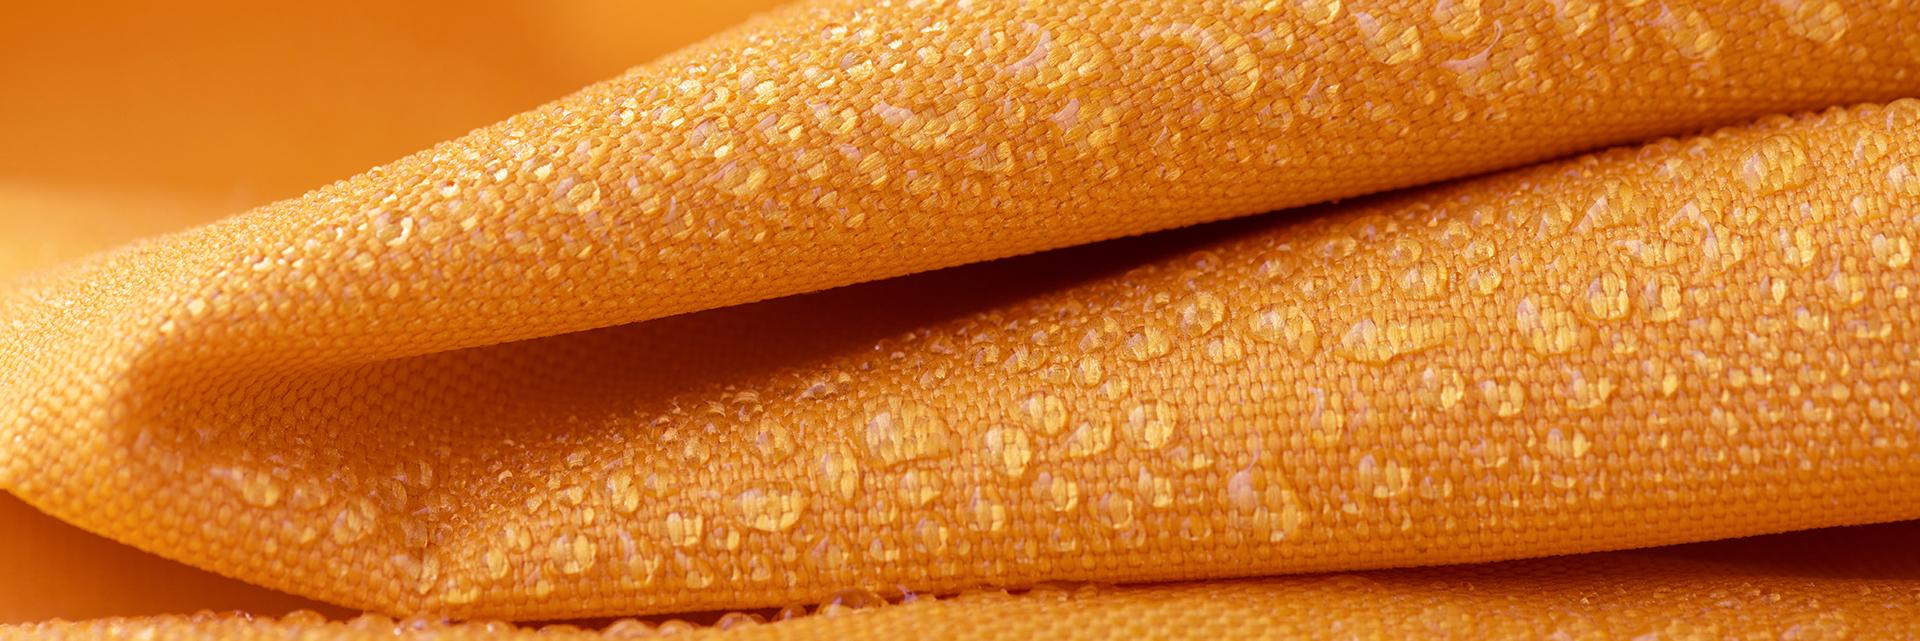 Wasserdichtes oranges Textilgewebe